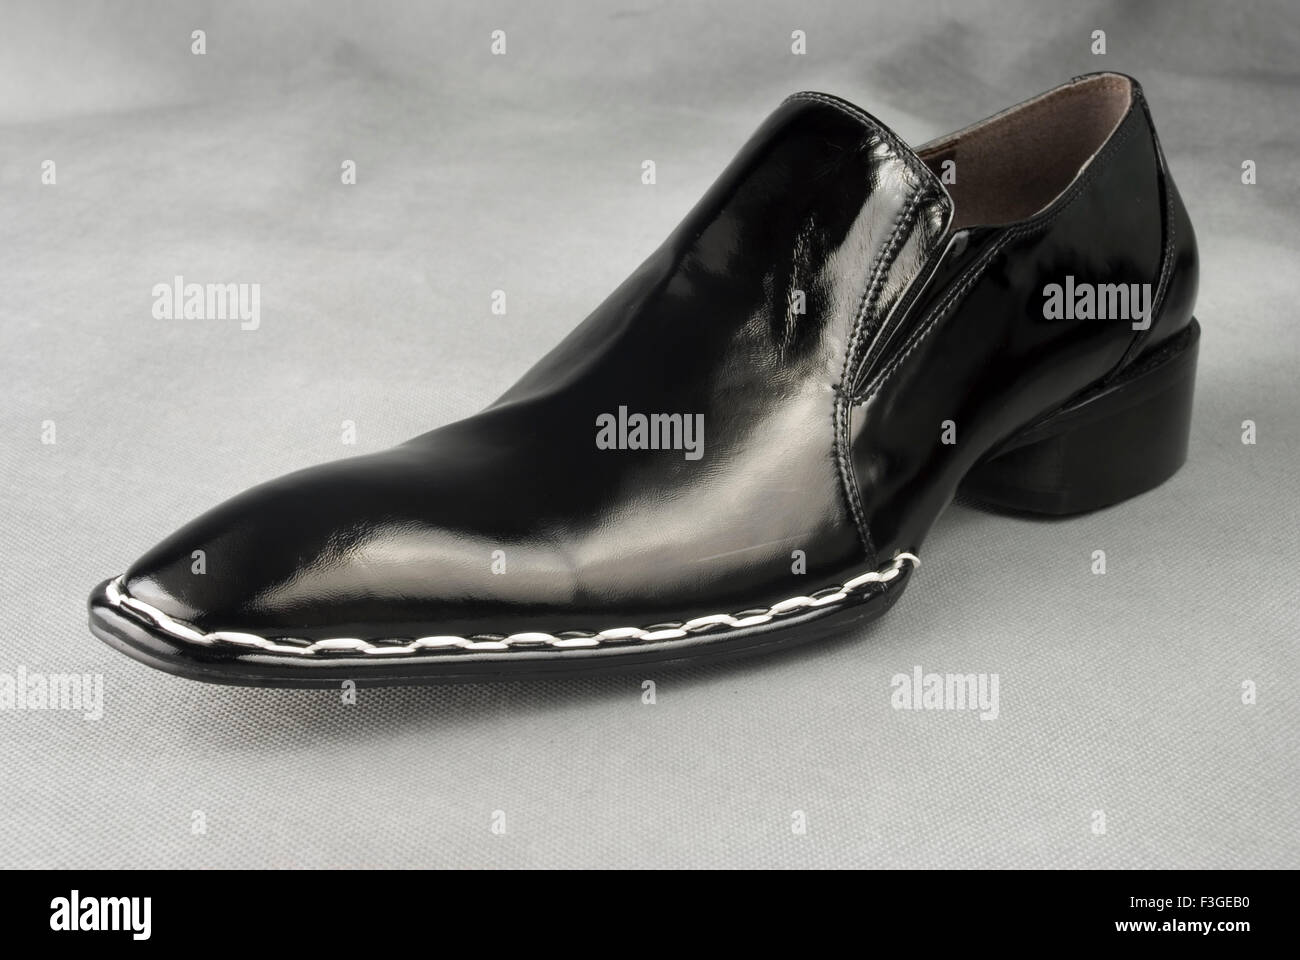 Chaussure en cuir noir sur fond gris MR Banque D'Images